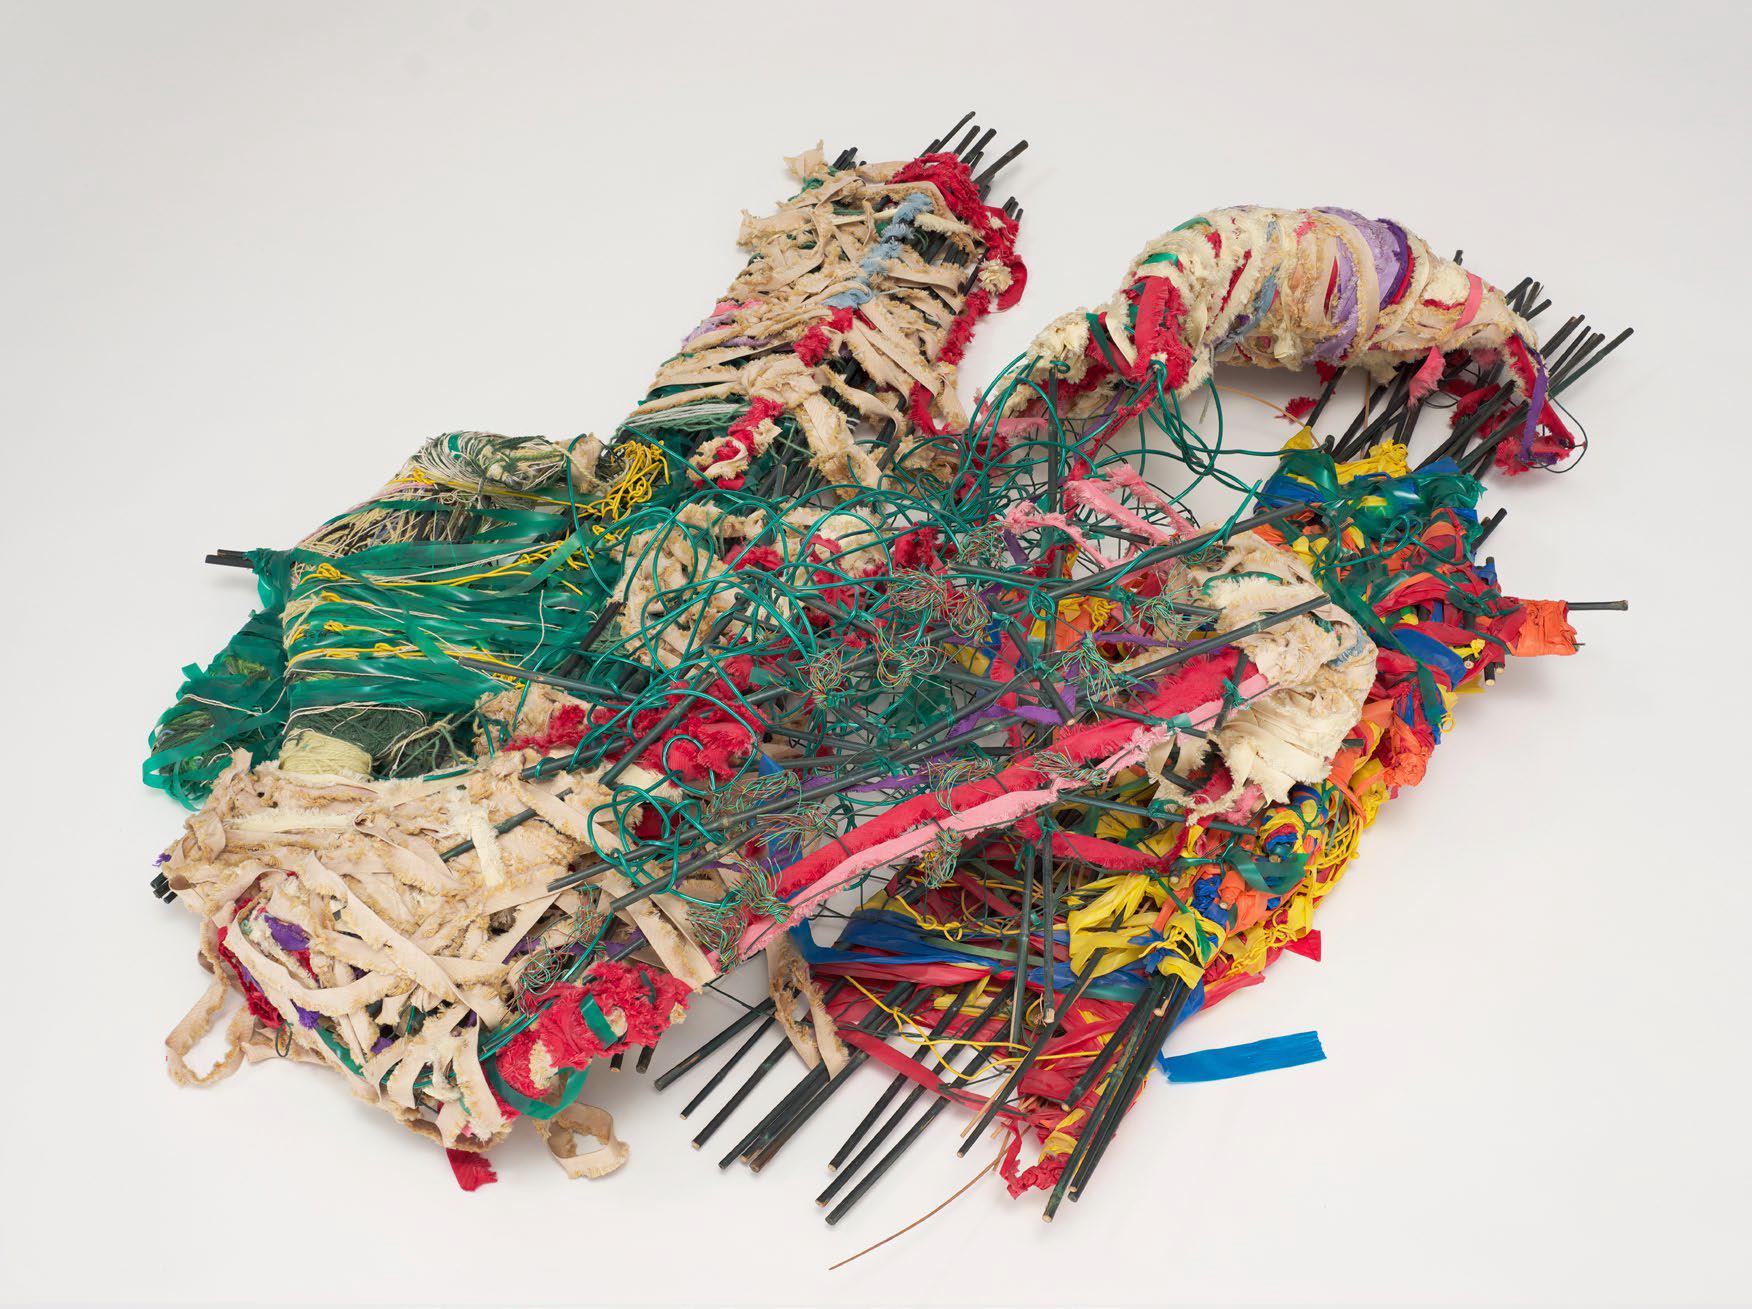 Konstverk av Judith Scott i garn och tråd som har snurrats i en organisk form. Verket är mångfärgat..